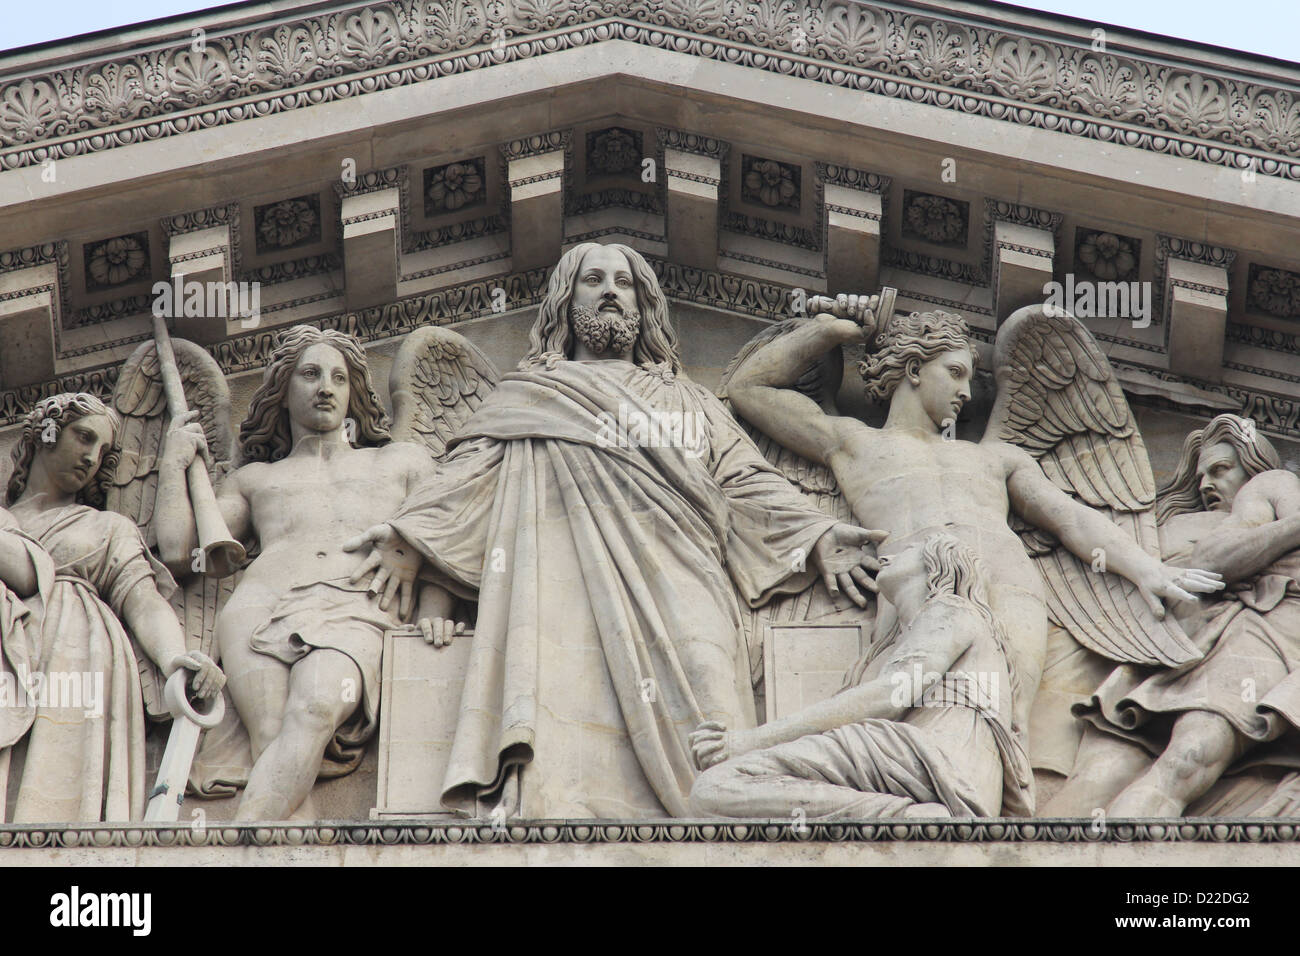 Le tympan sculpté de l'église 'La Madeleine', Paris Banque D'Images